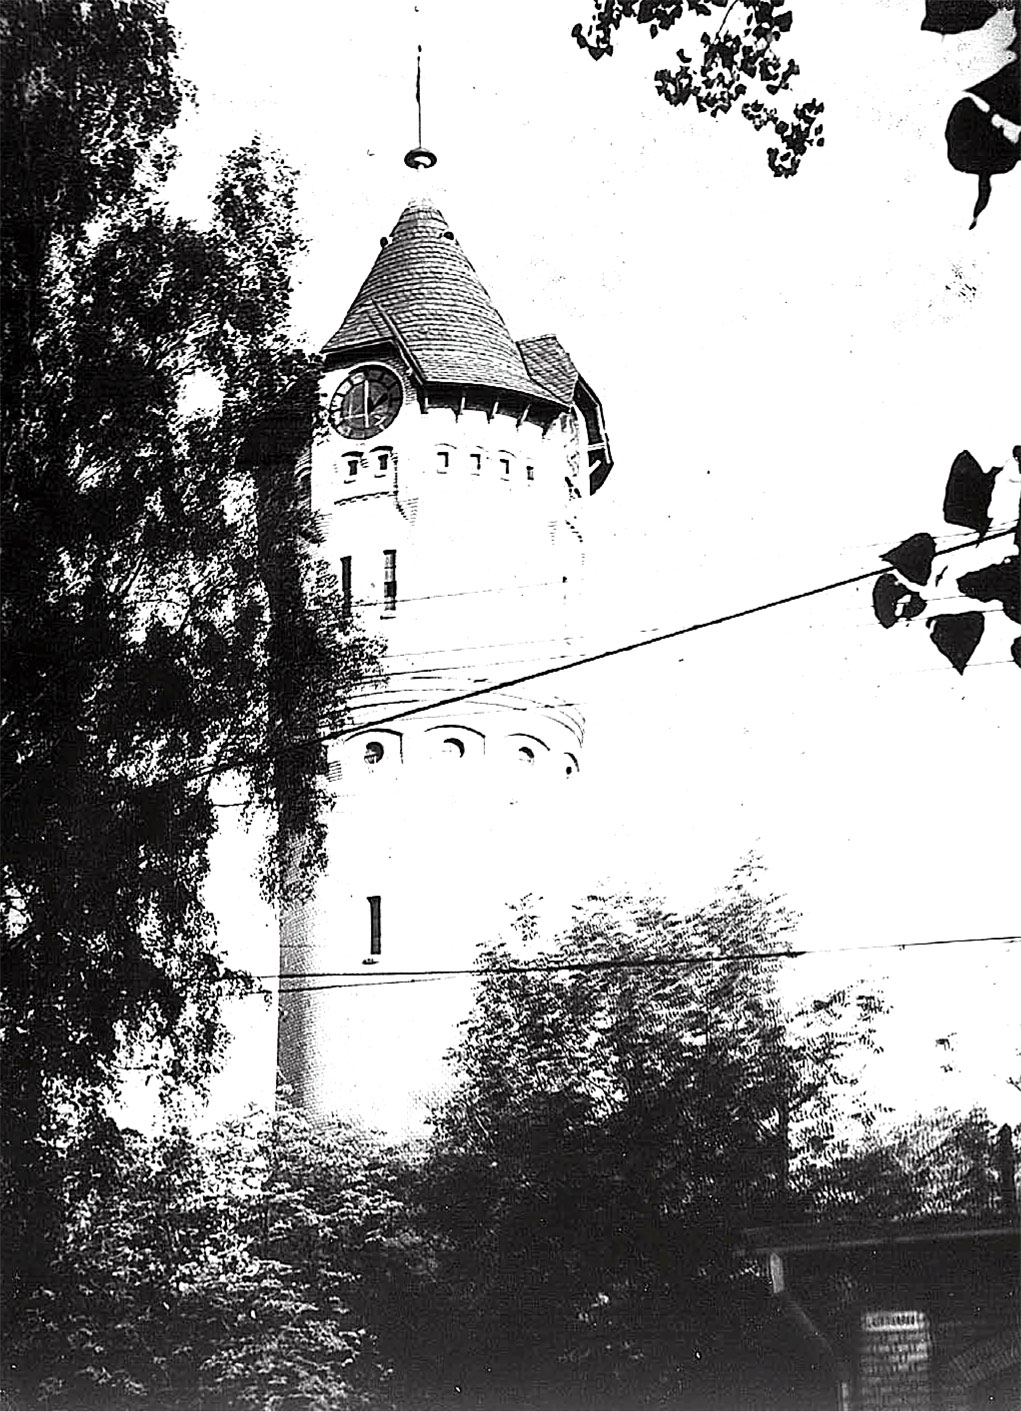 Символ и гордость Свентошува - башня, пережившая Первую и Вторую мировые войны, повидавшая на протяжении векового периода немало Европейских преобразований